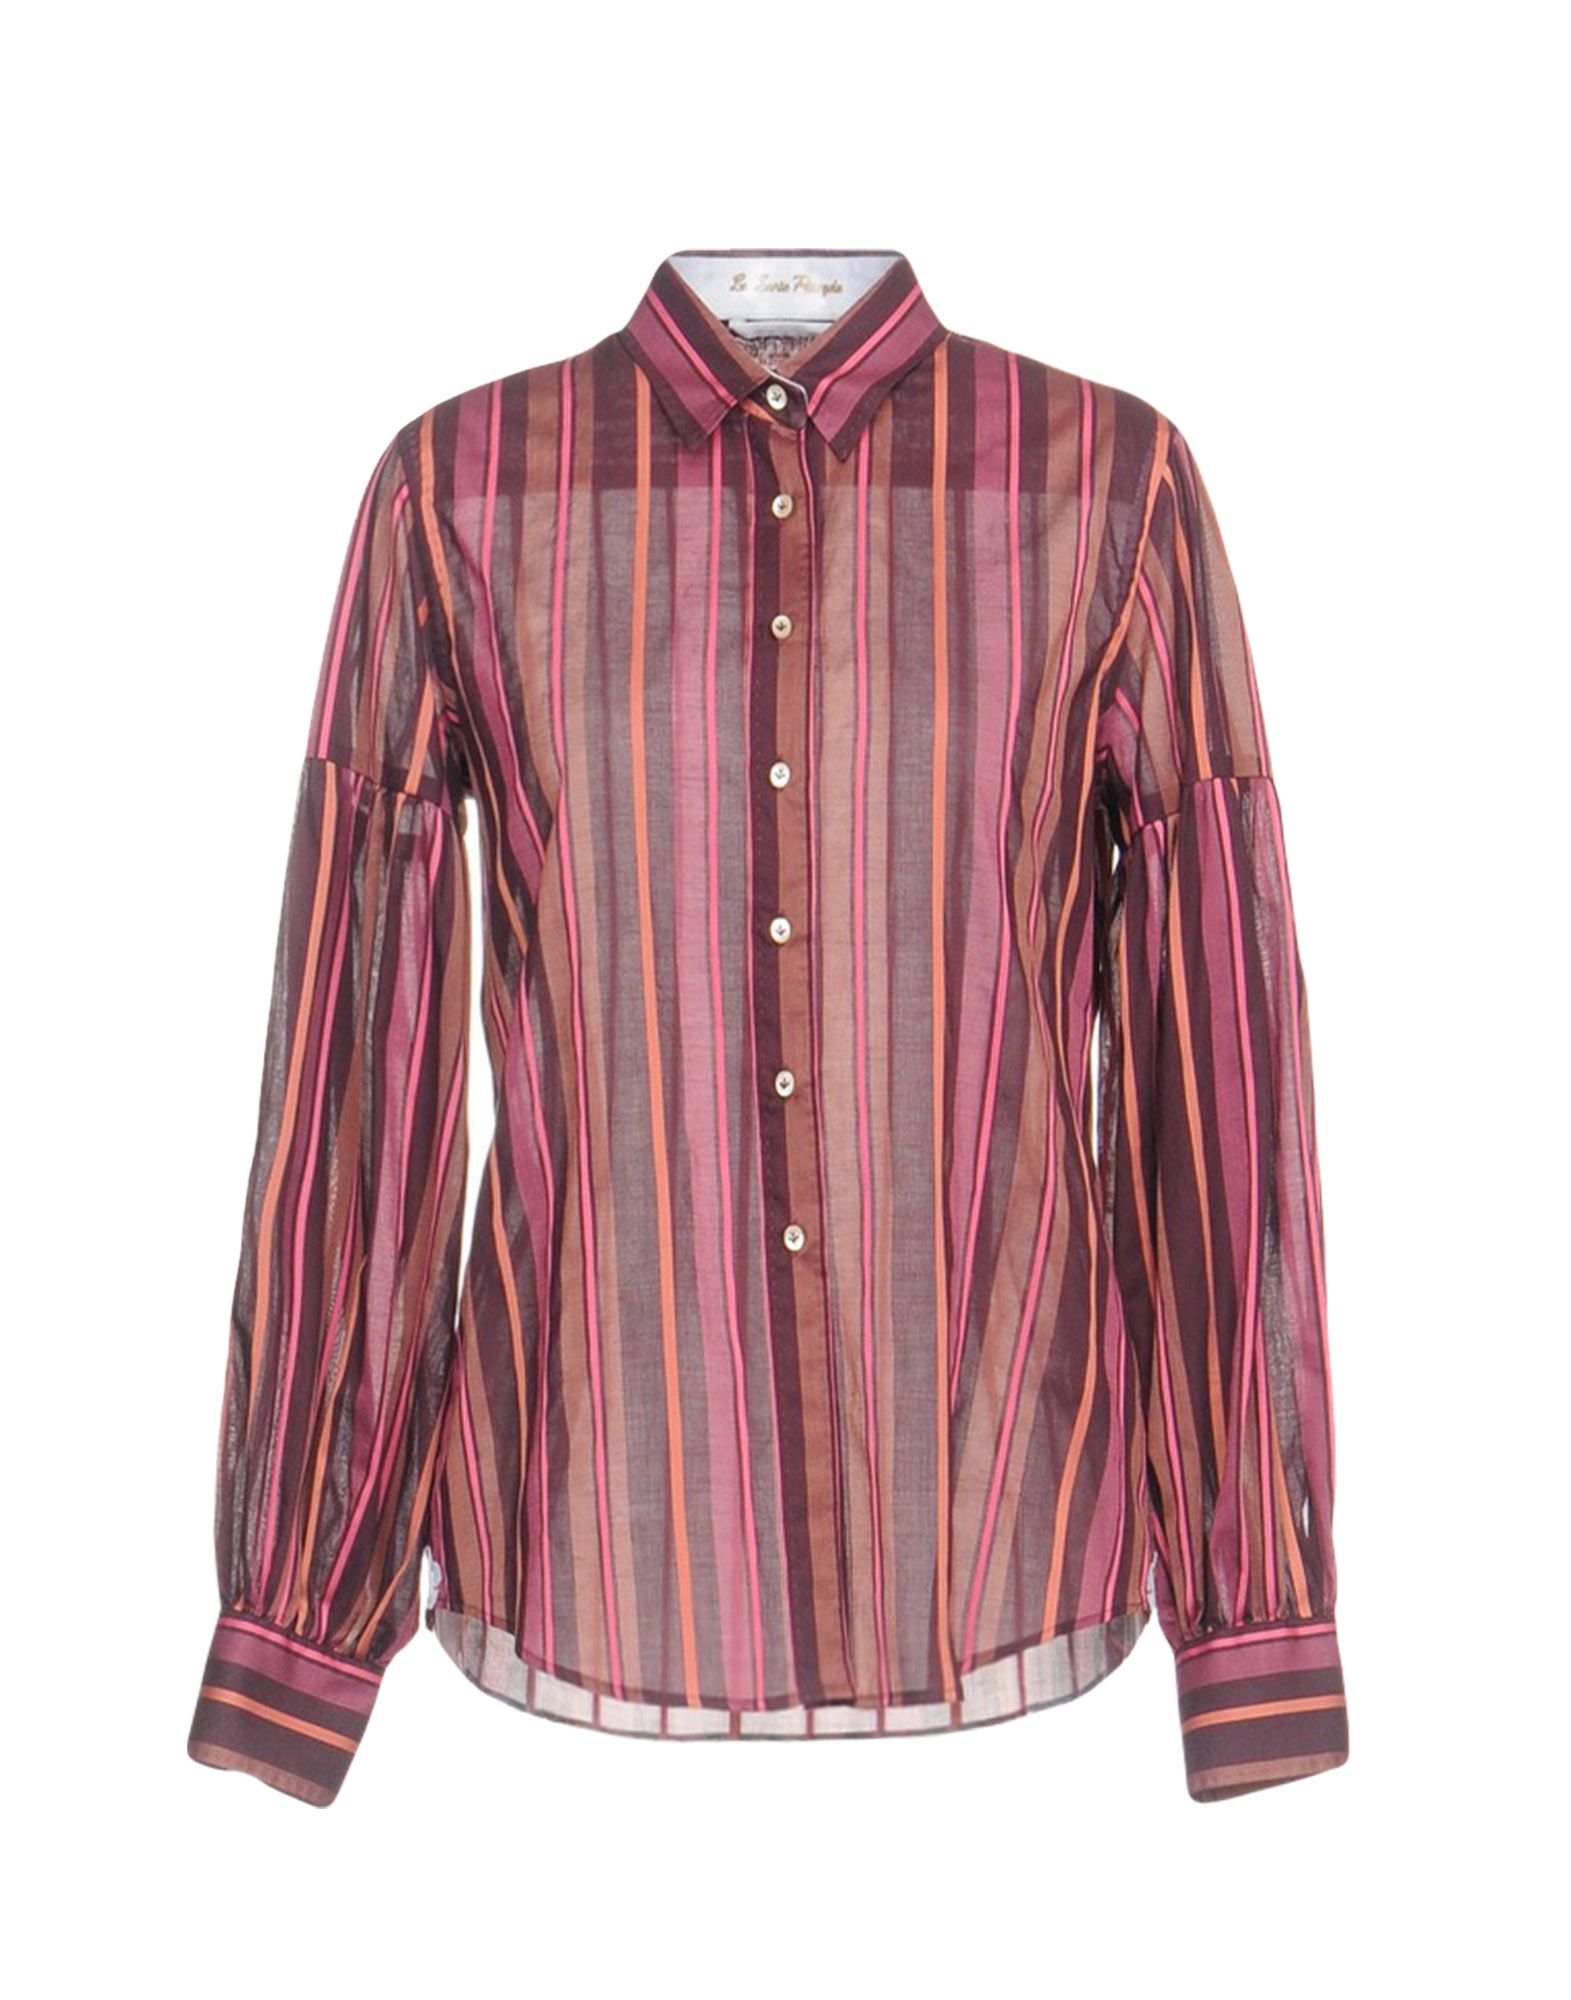 LE SARTE PETTEGOLE Striped shirt,38743213SL 2